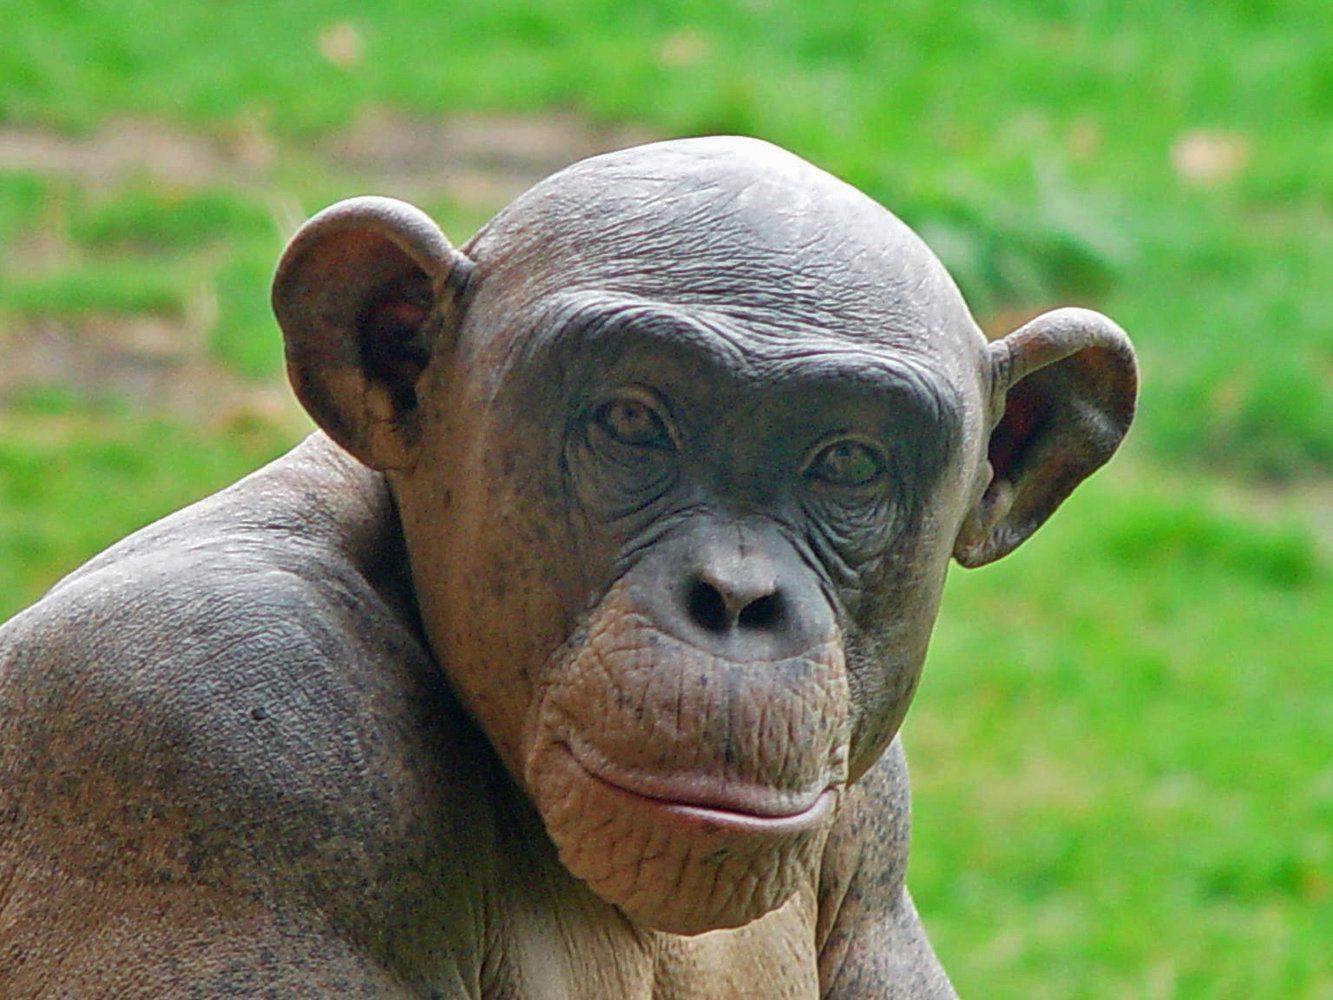 hairless chimpanzee